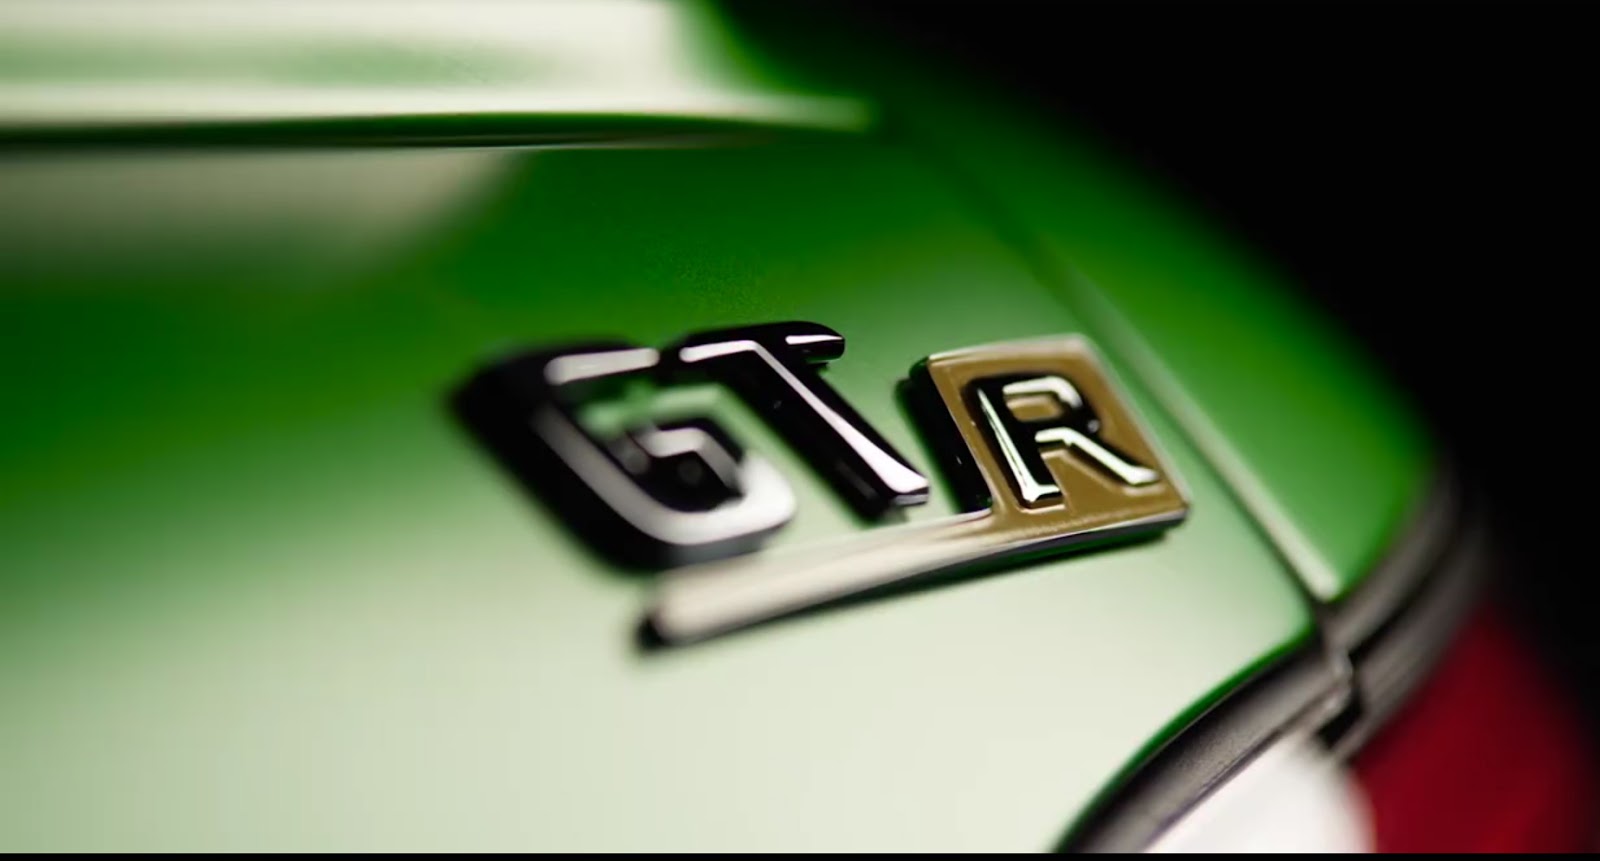 Mercedes AMG GT R